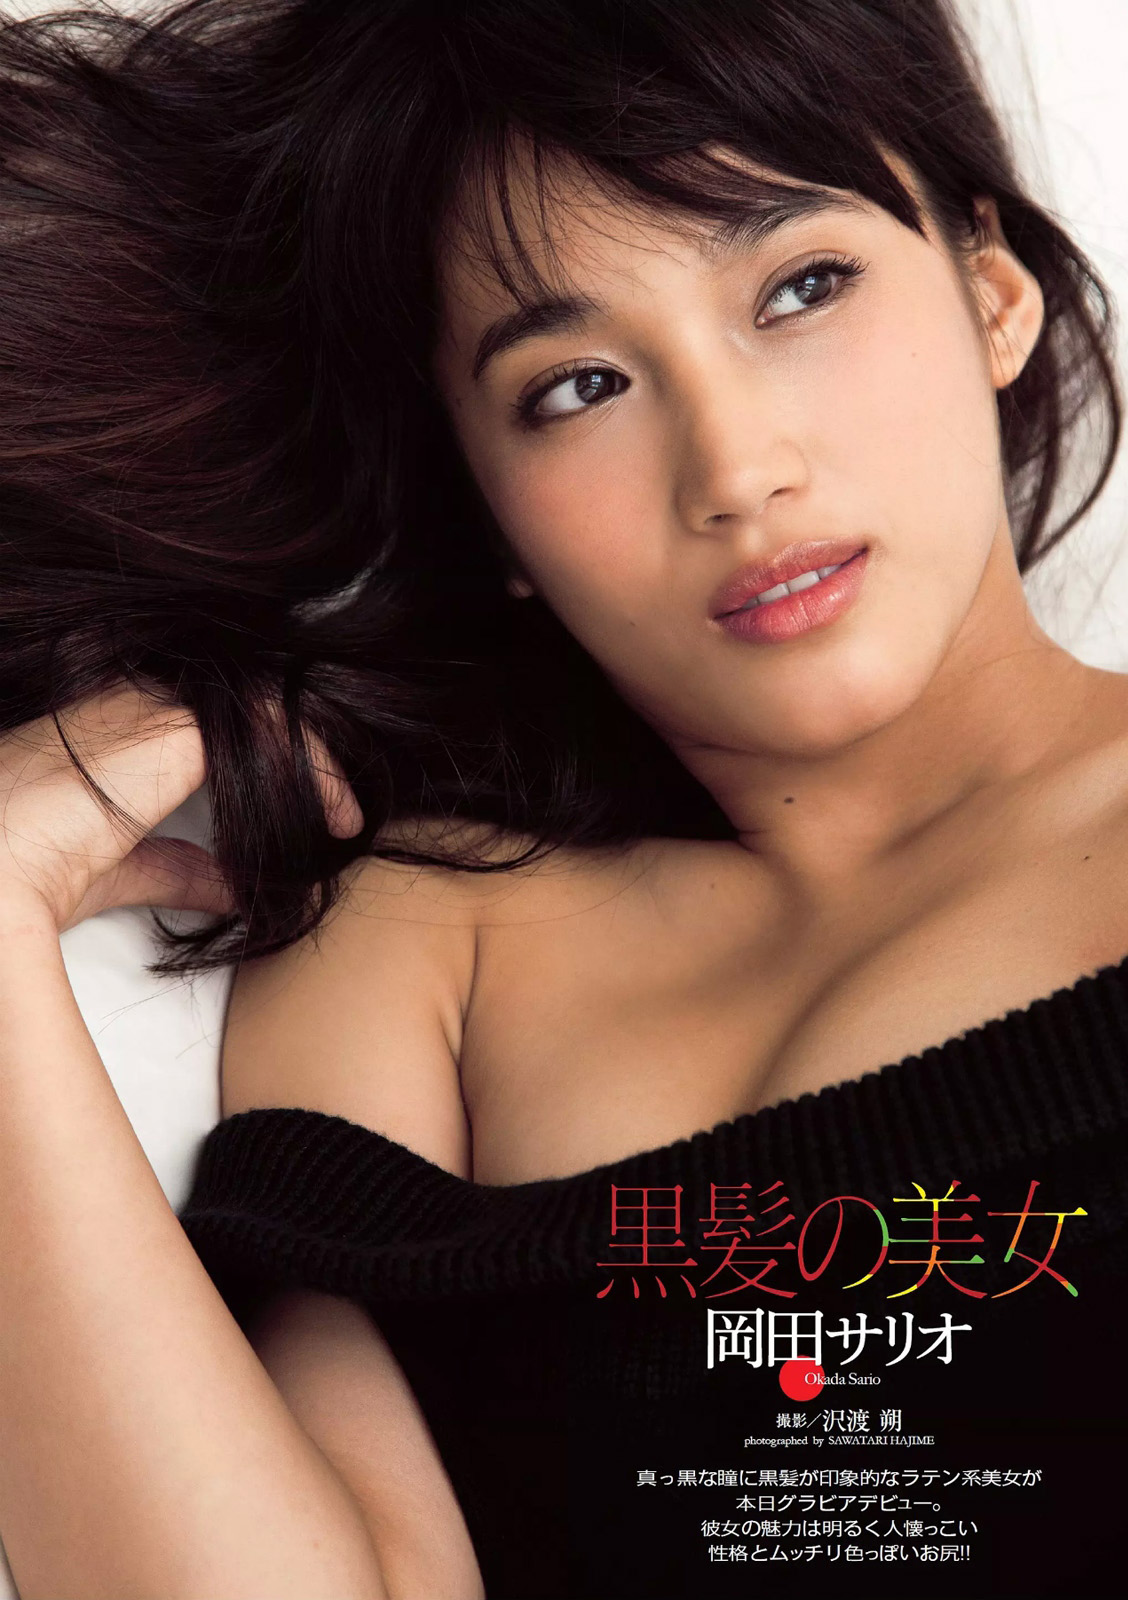 お か だ さ り お, 岡 田 サ リ オ, Sario Okada - Weekly Playboy / 2014.08.04.